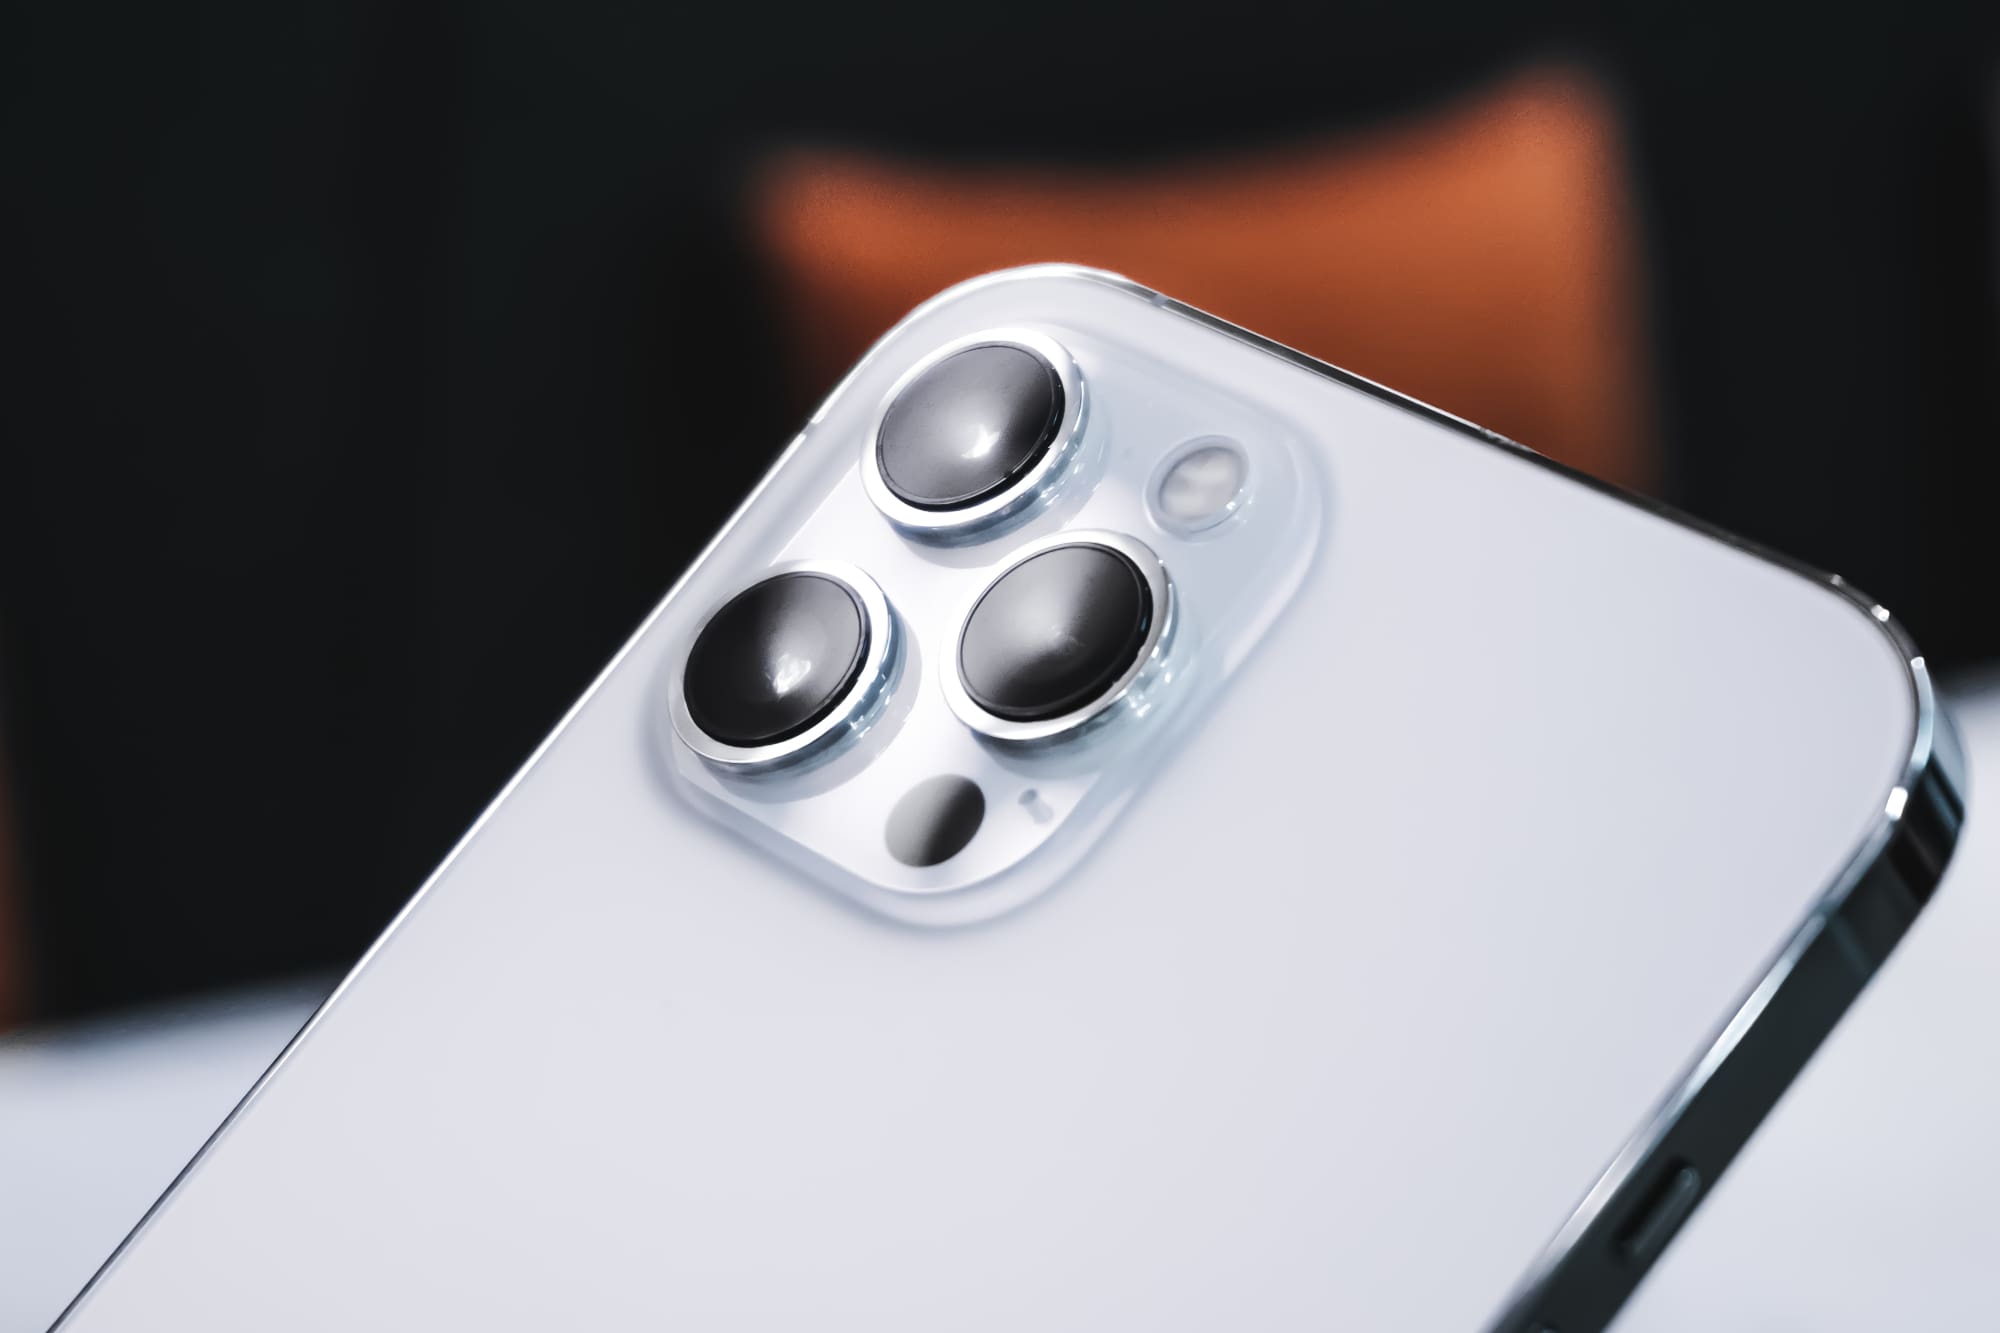 iPhone 13 будет поддерживать режим ProRes, получит новый редактор фото, размытие фона на видео и уменьшенную чёлку